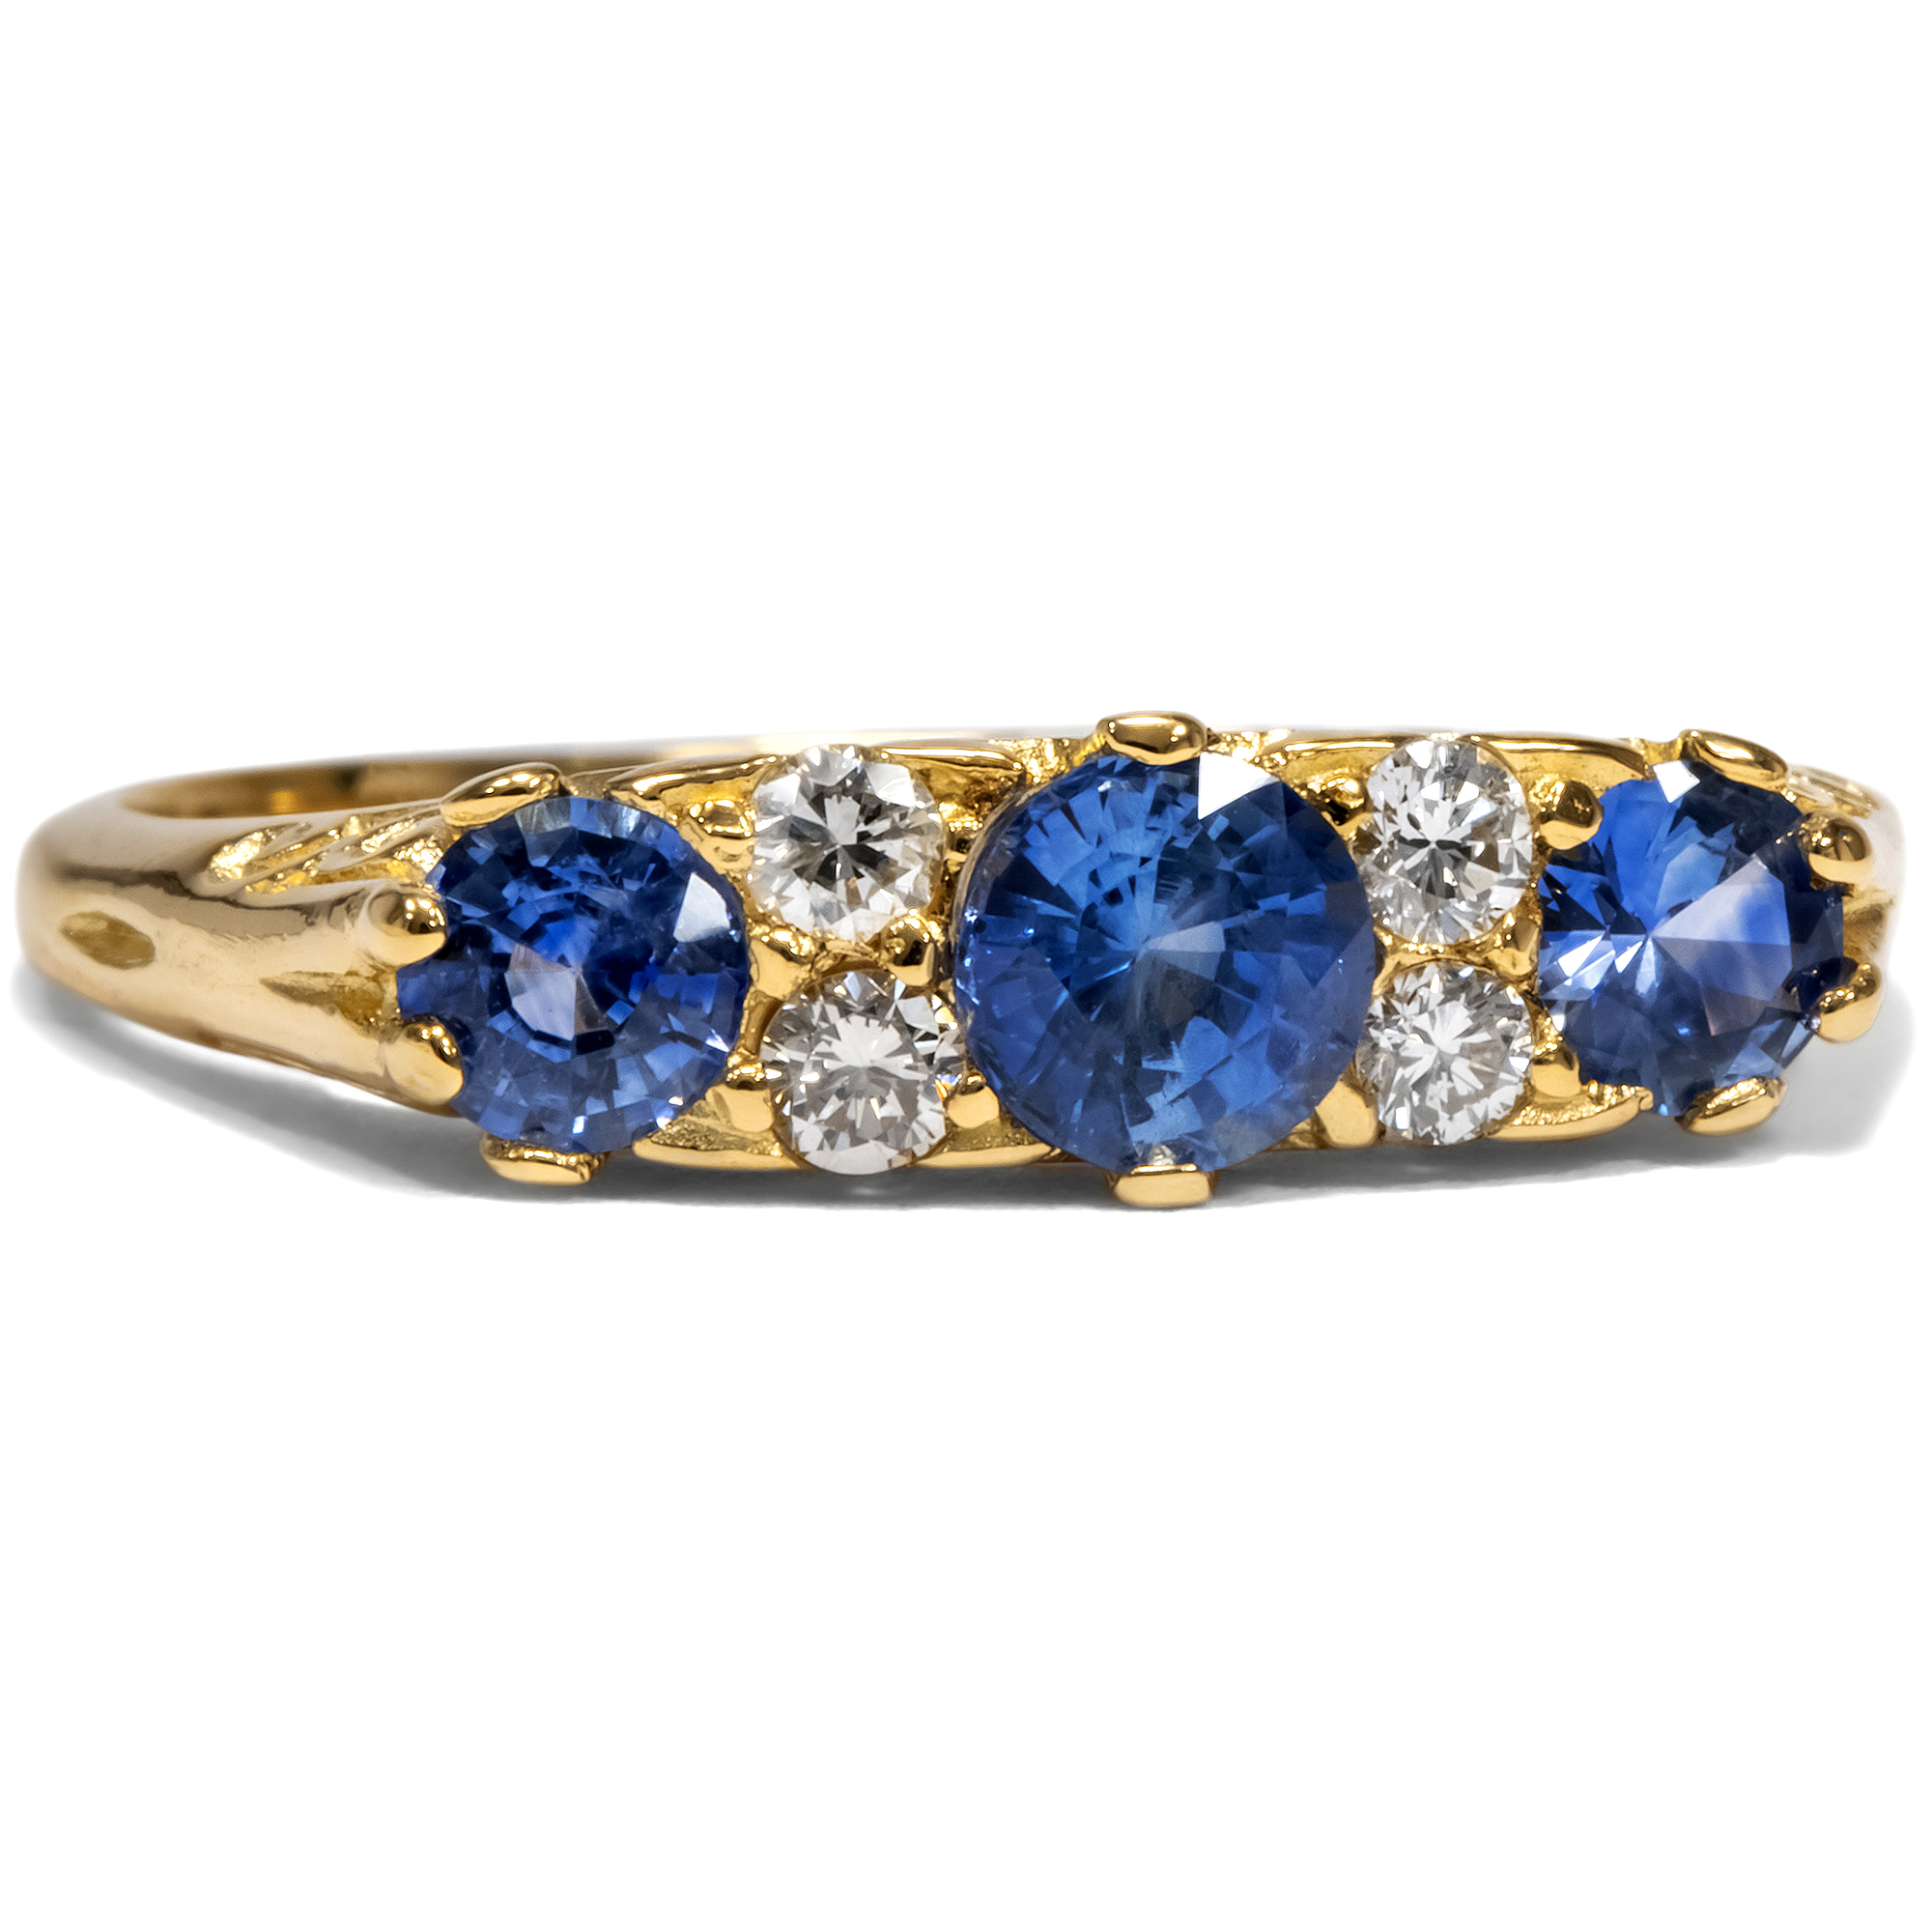 Ungetragener Ring aus Gold mit Saphiren & Diamanten aus unserer Werkstatt